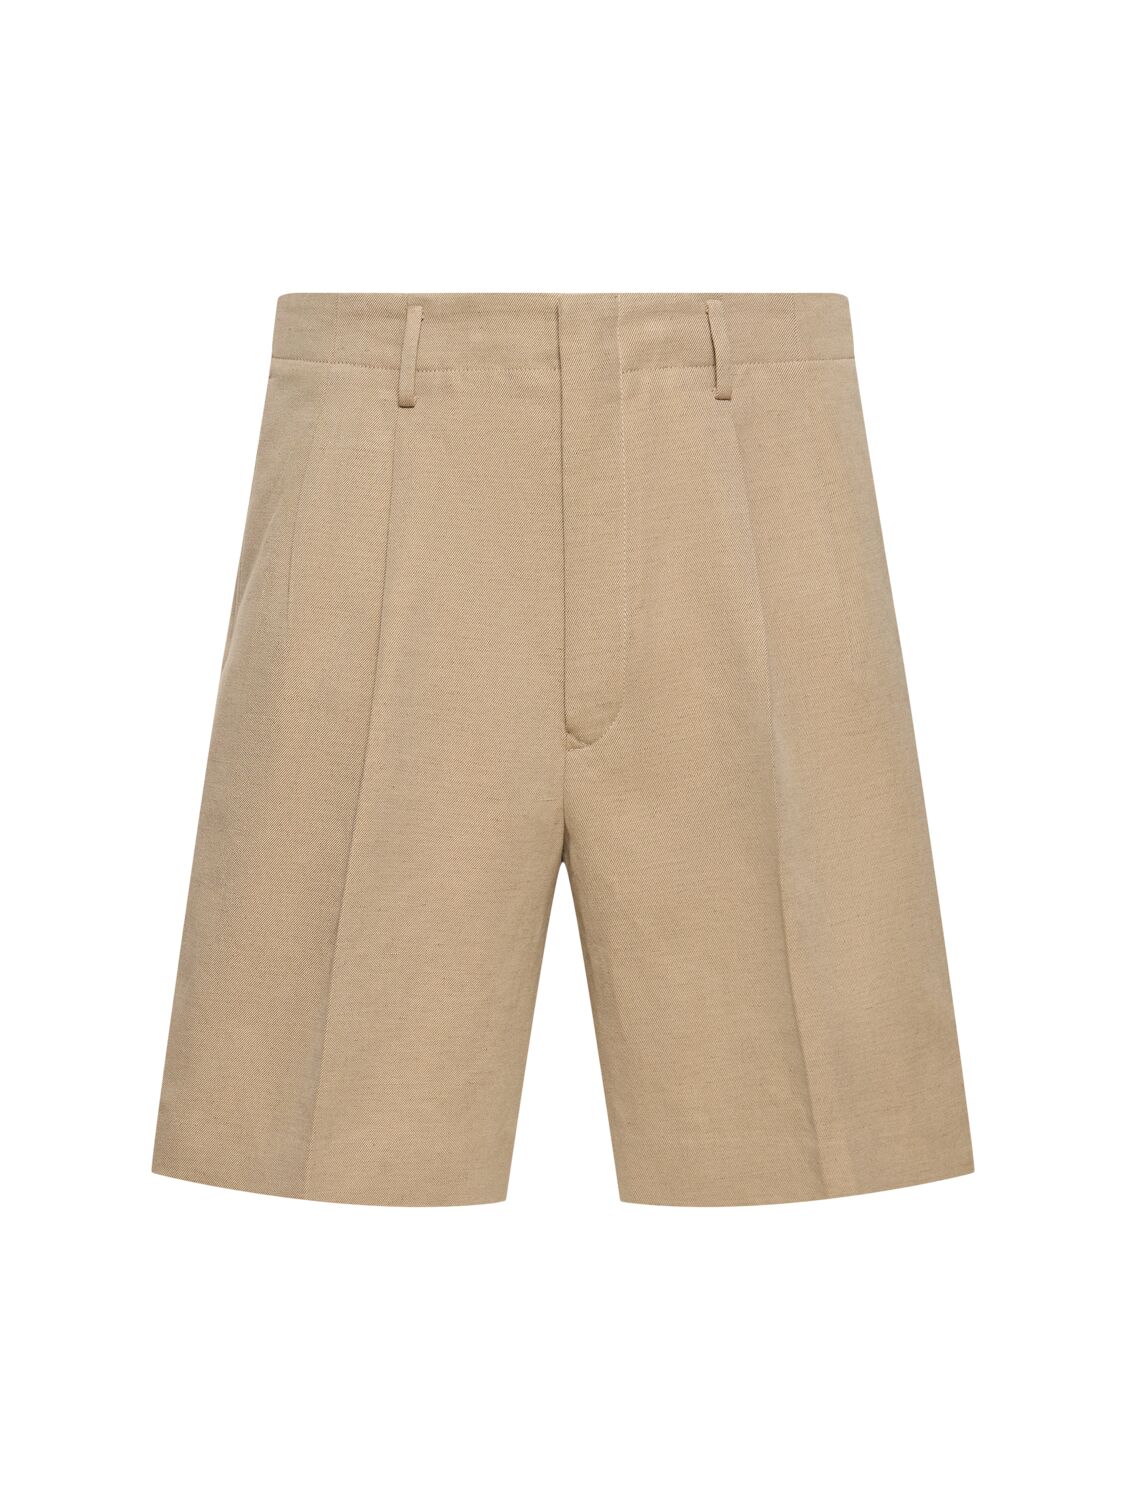 Joetsu Cotton & Linen Bermuda Shorts